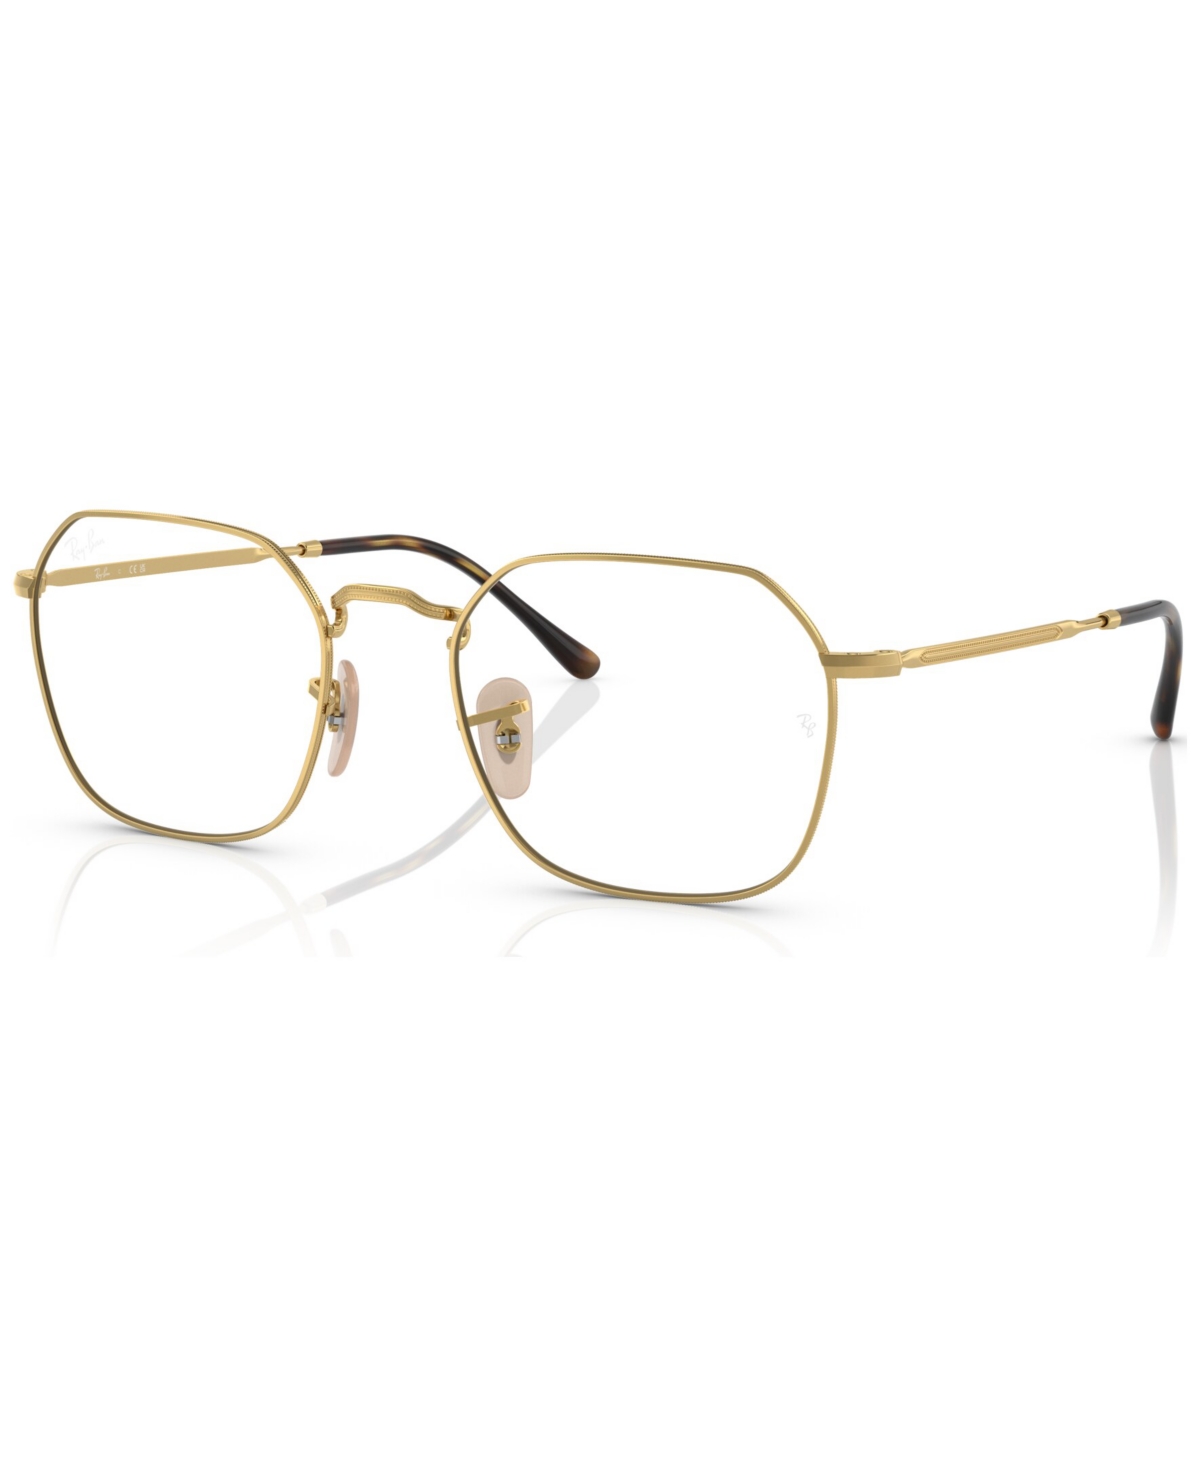 Unisex Irregular Eyeglasses, RX3694V51-o - Black